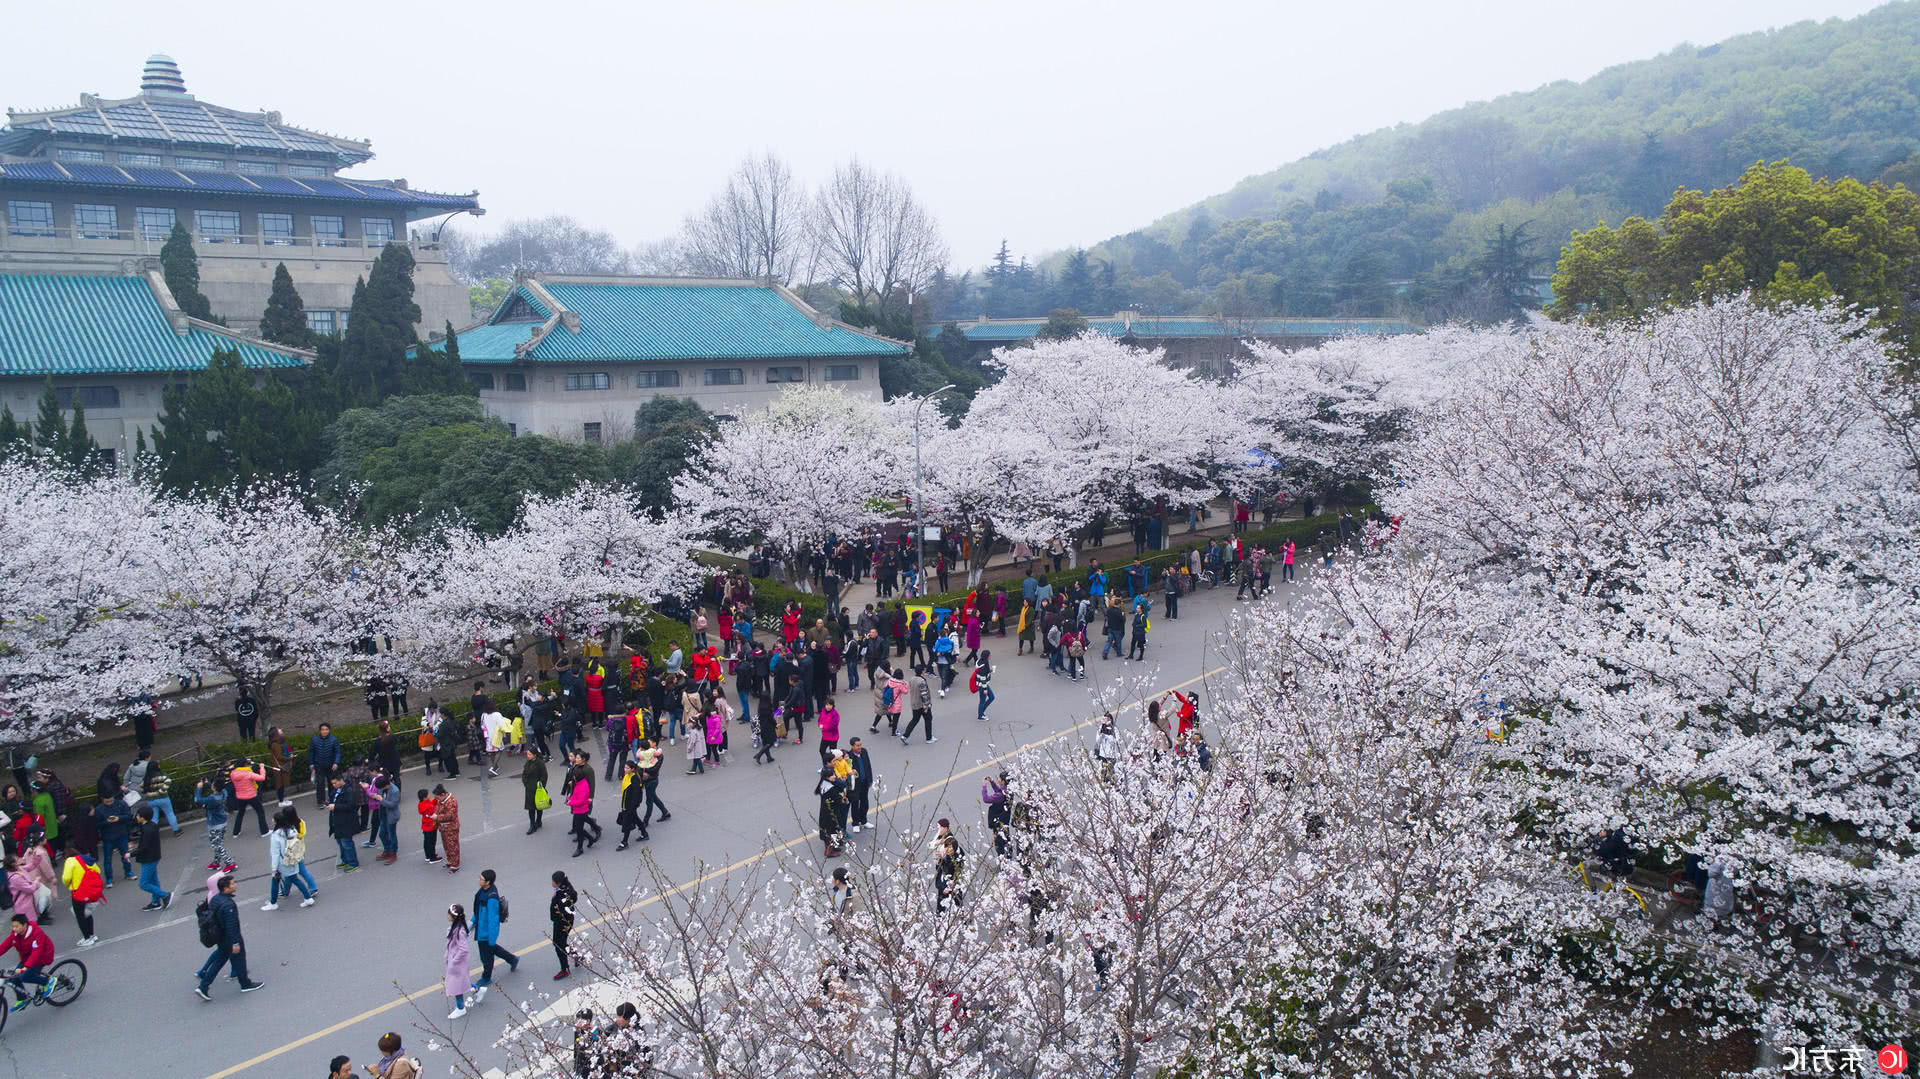 As cerejeiras em flor do as boas vindas  primavera na China com um dos maiores espetculos naturais da Terra 02